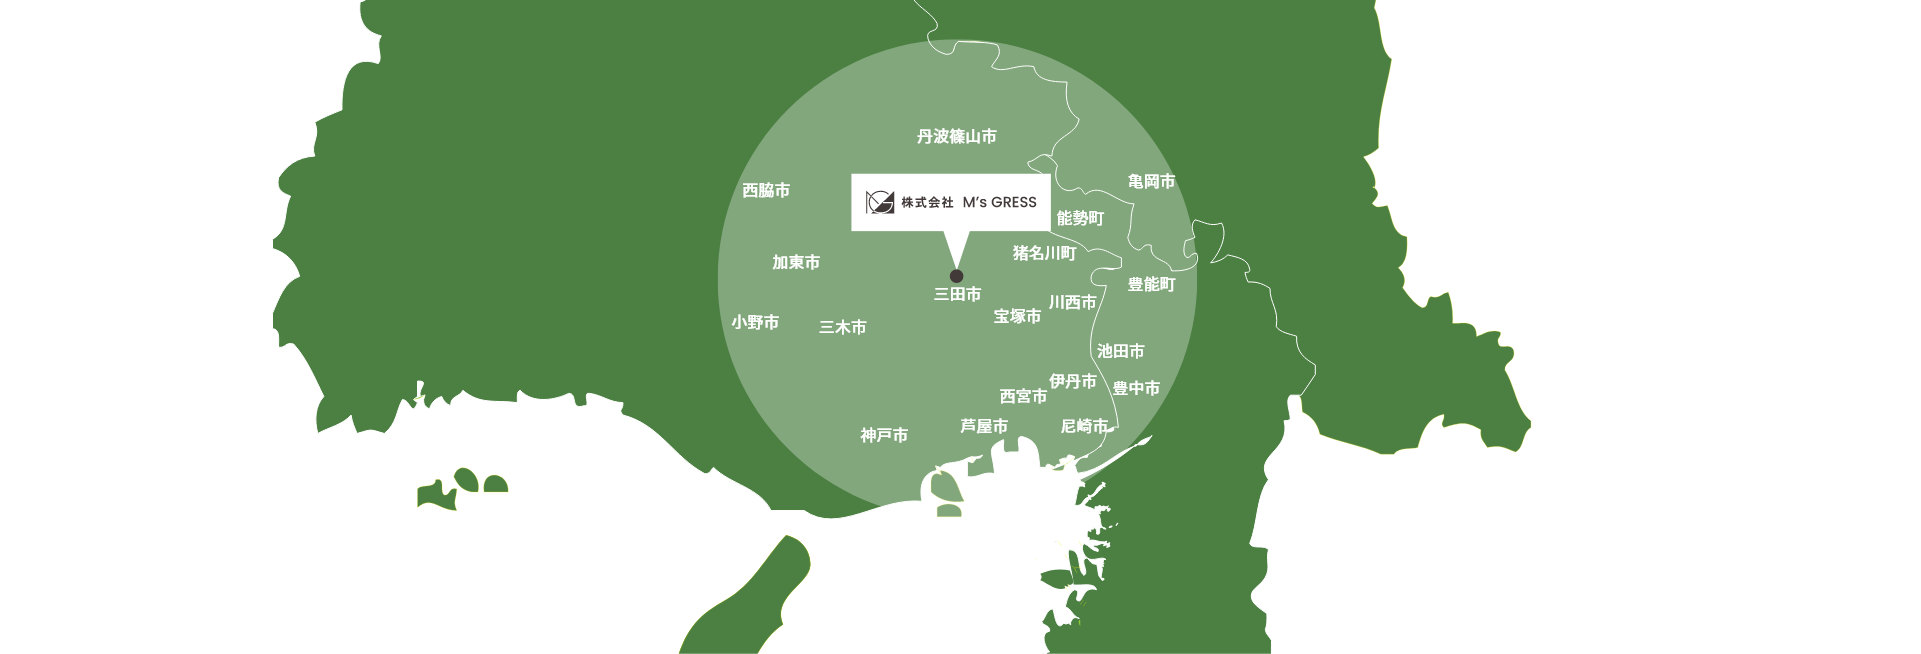 エムズグレスの対応エリアマップ。三田市から30km圏内にご対応。